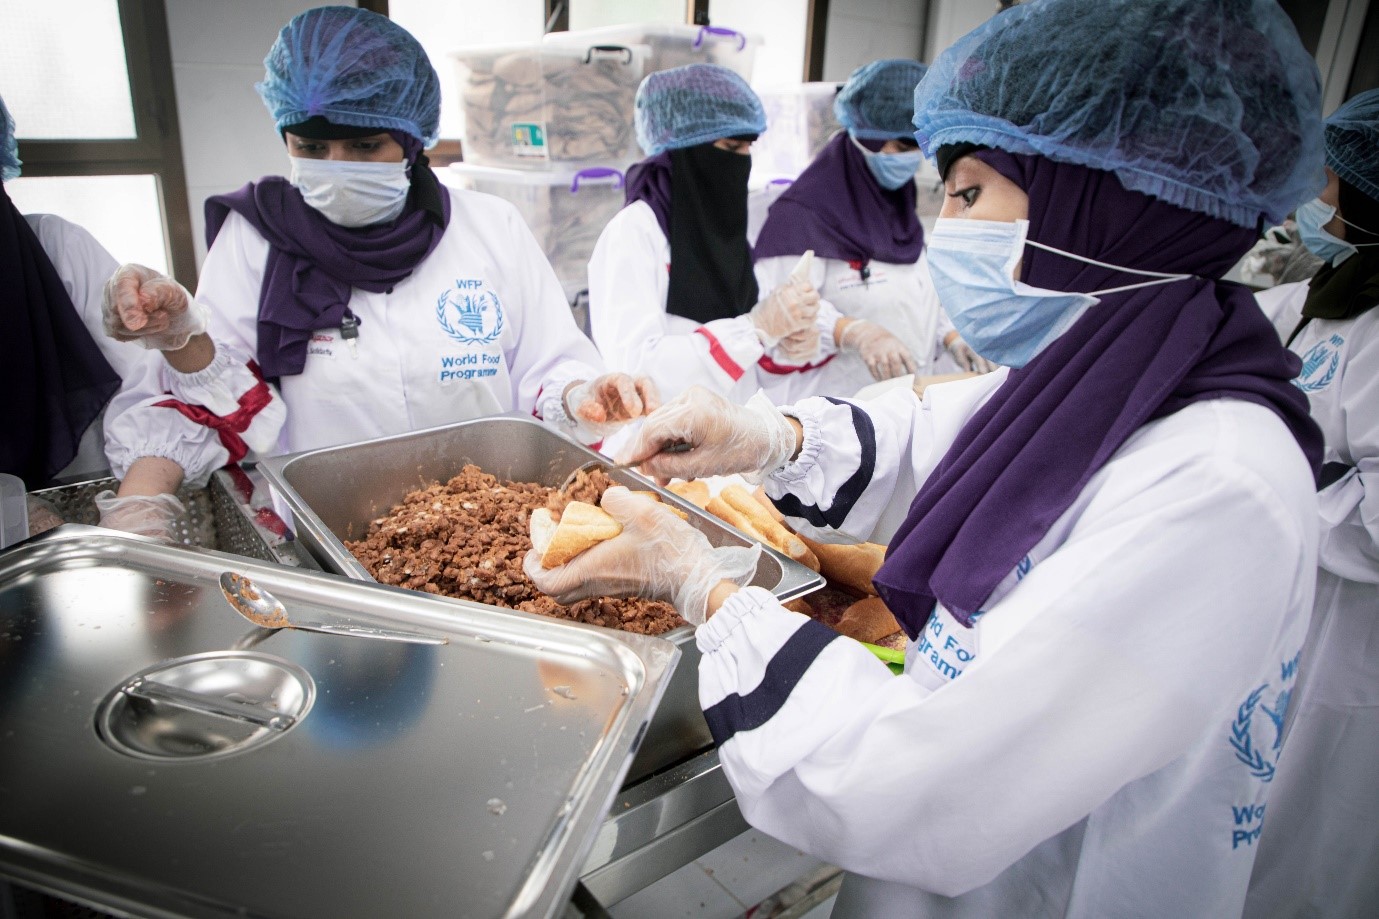 النساء في المطبخ الذي يدعمه البرنامج يحضرن شطائر للغداء المدرسي. صورة: برنامج الأغذية العالمي/محمد ناشر